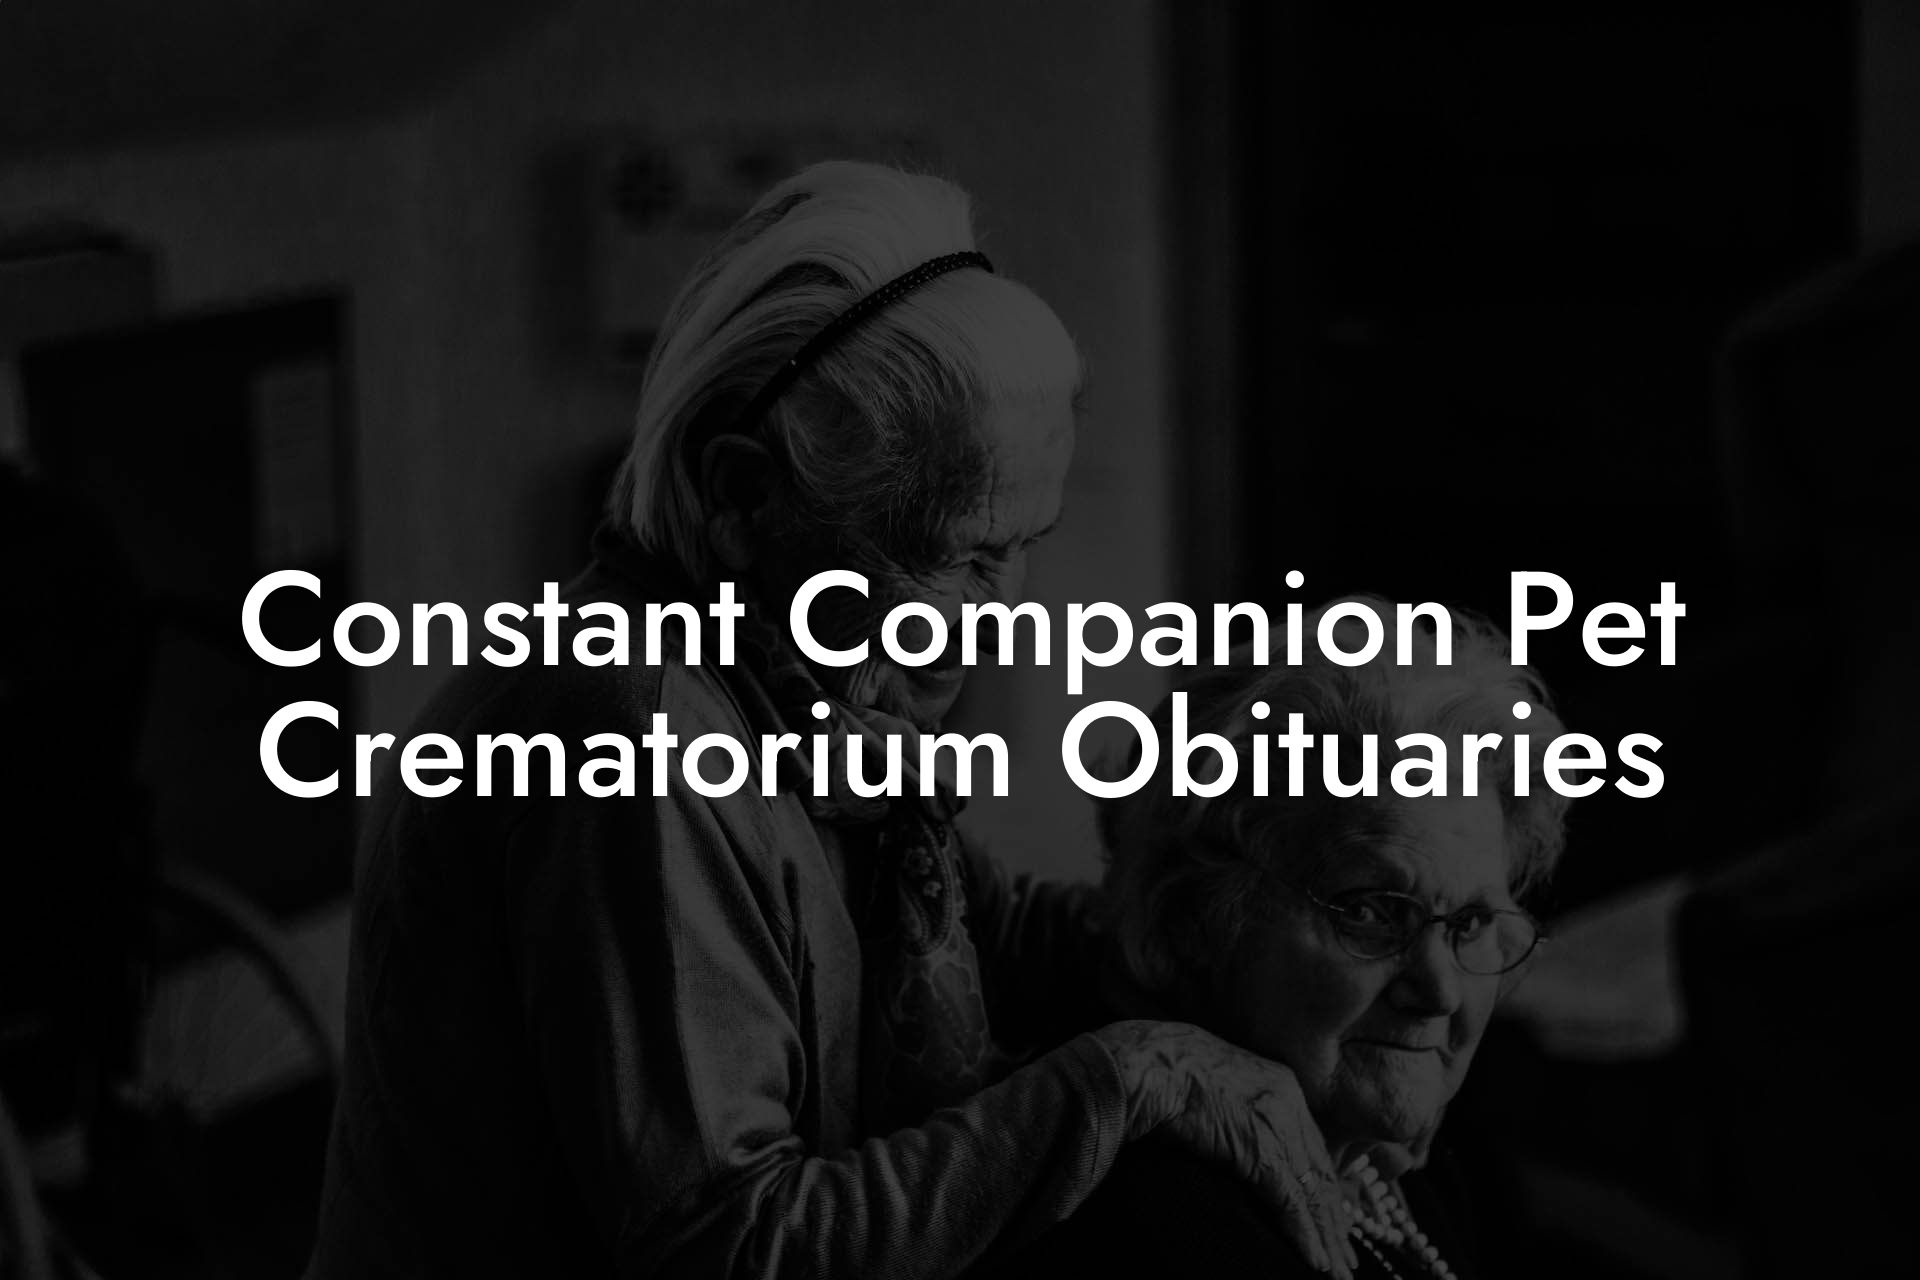 Constant Companion Pet Crematorium Obituaries